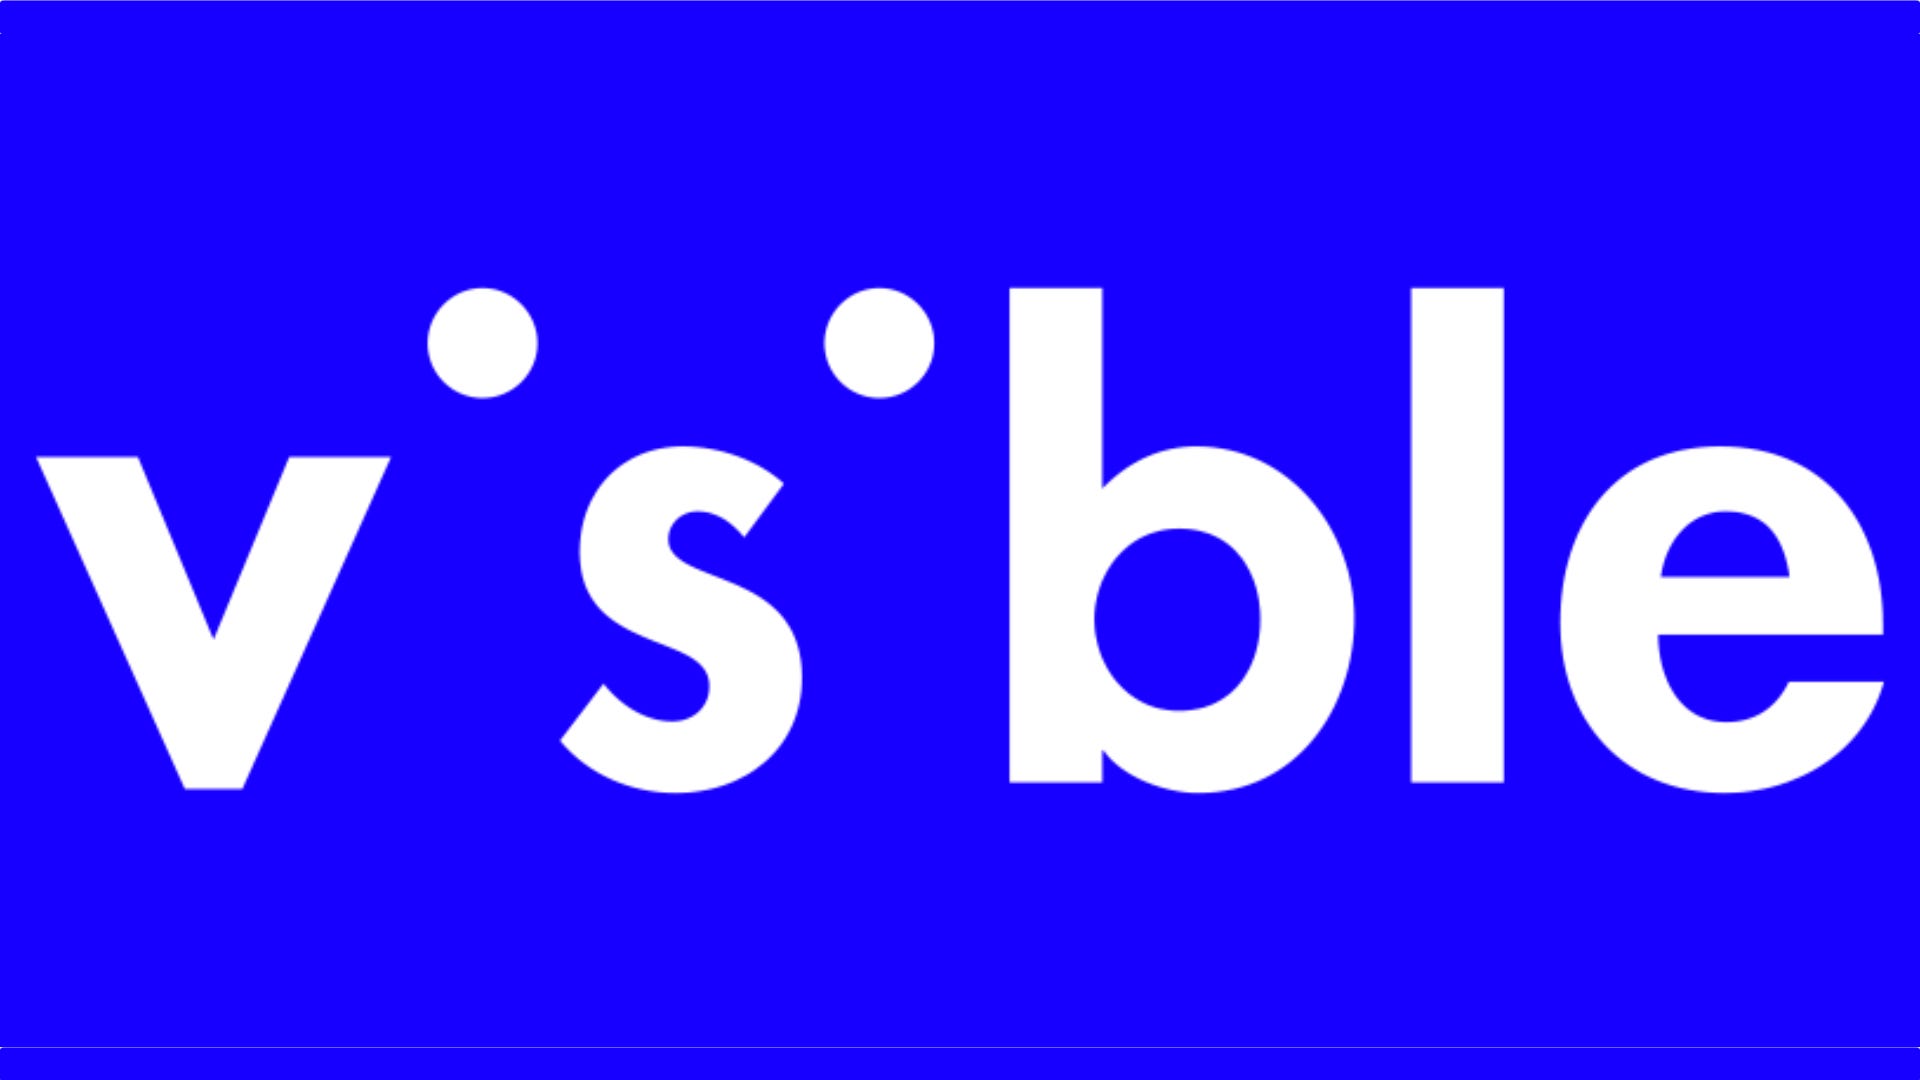 Vsble (Tampilan) Logo tidak terbatas pada latar belakang biru.